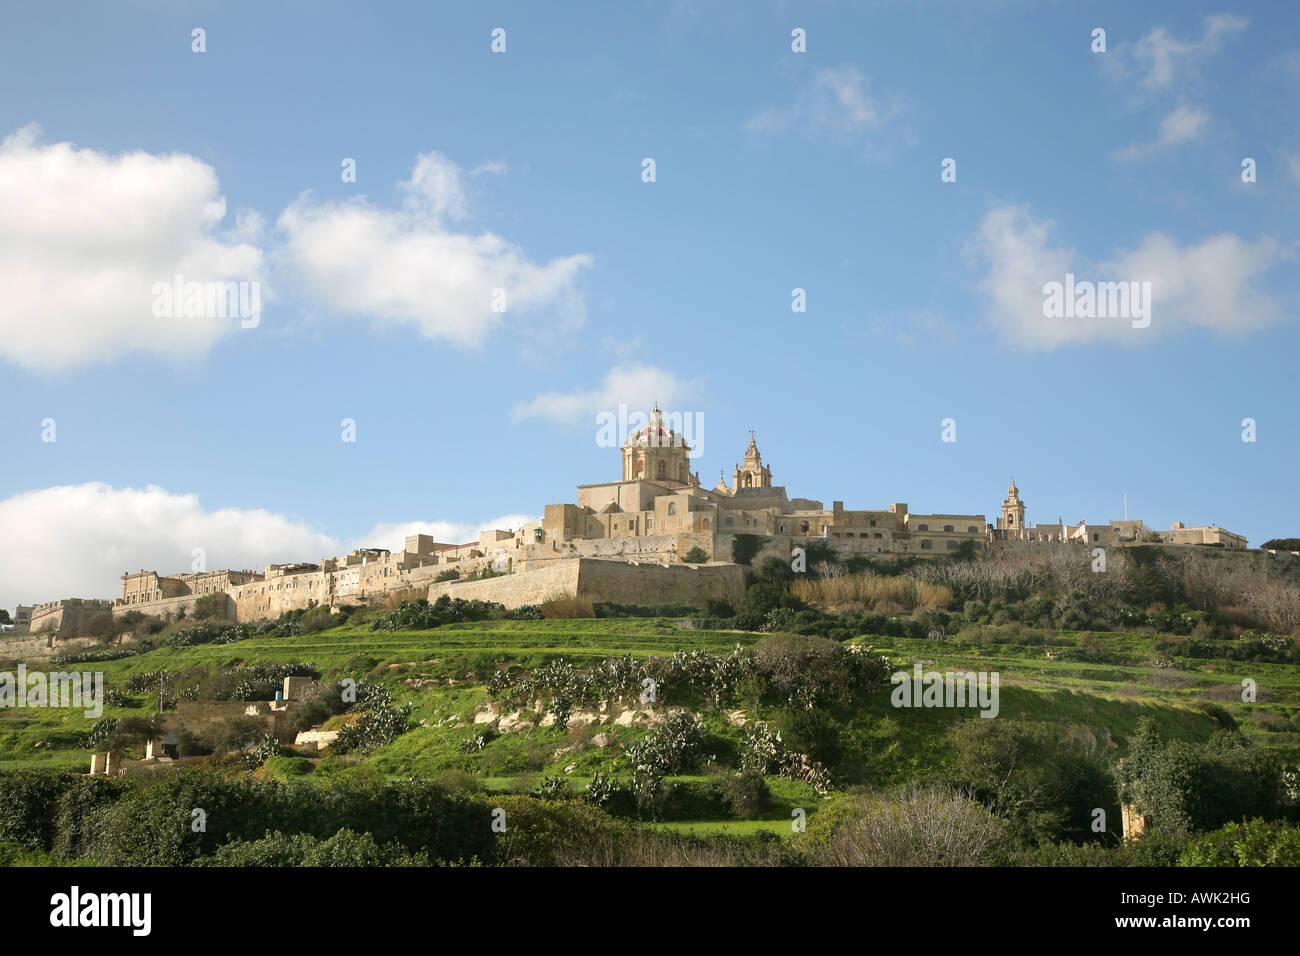 The ancient city of Mdina Malta Stock Photo